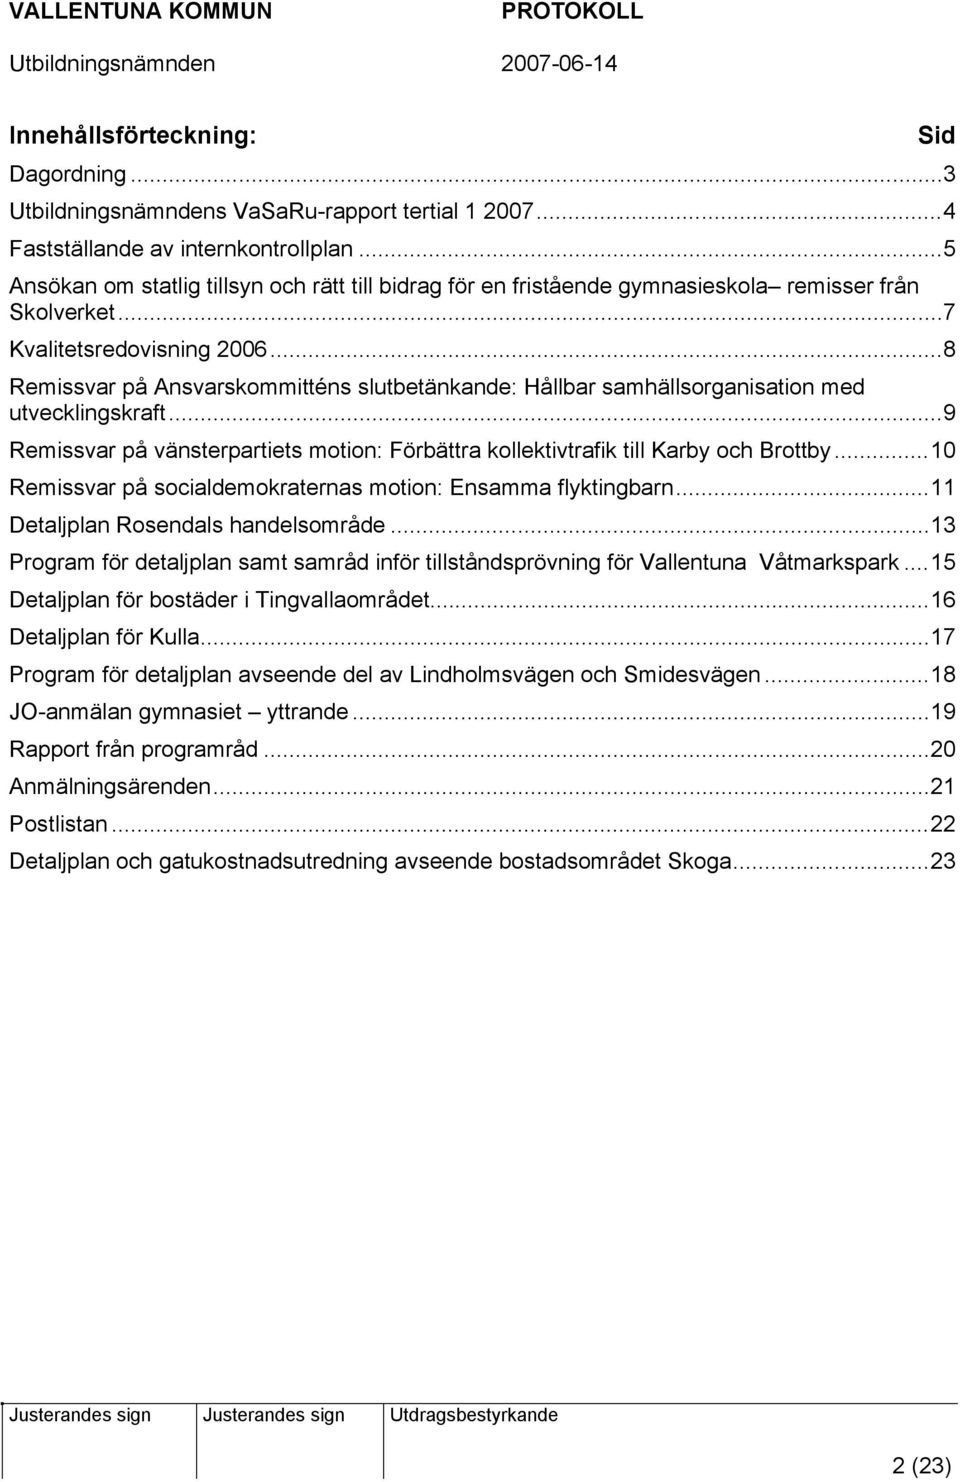 ..8 Remissvar på Ansvarskommitténs slutbetänkande: Hållbar samhällsorganisation med utvecklingskraft...9 Remissvar på vänsterpartiets motion: Förbättra kollektivtrafik till Karby och Brottby.